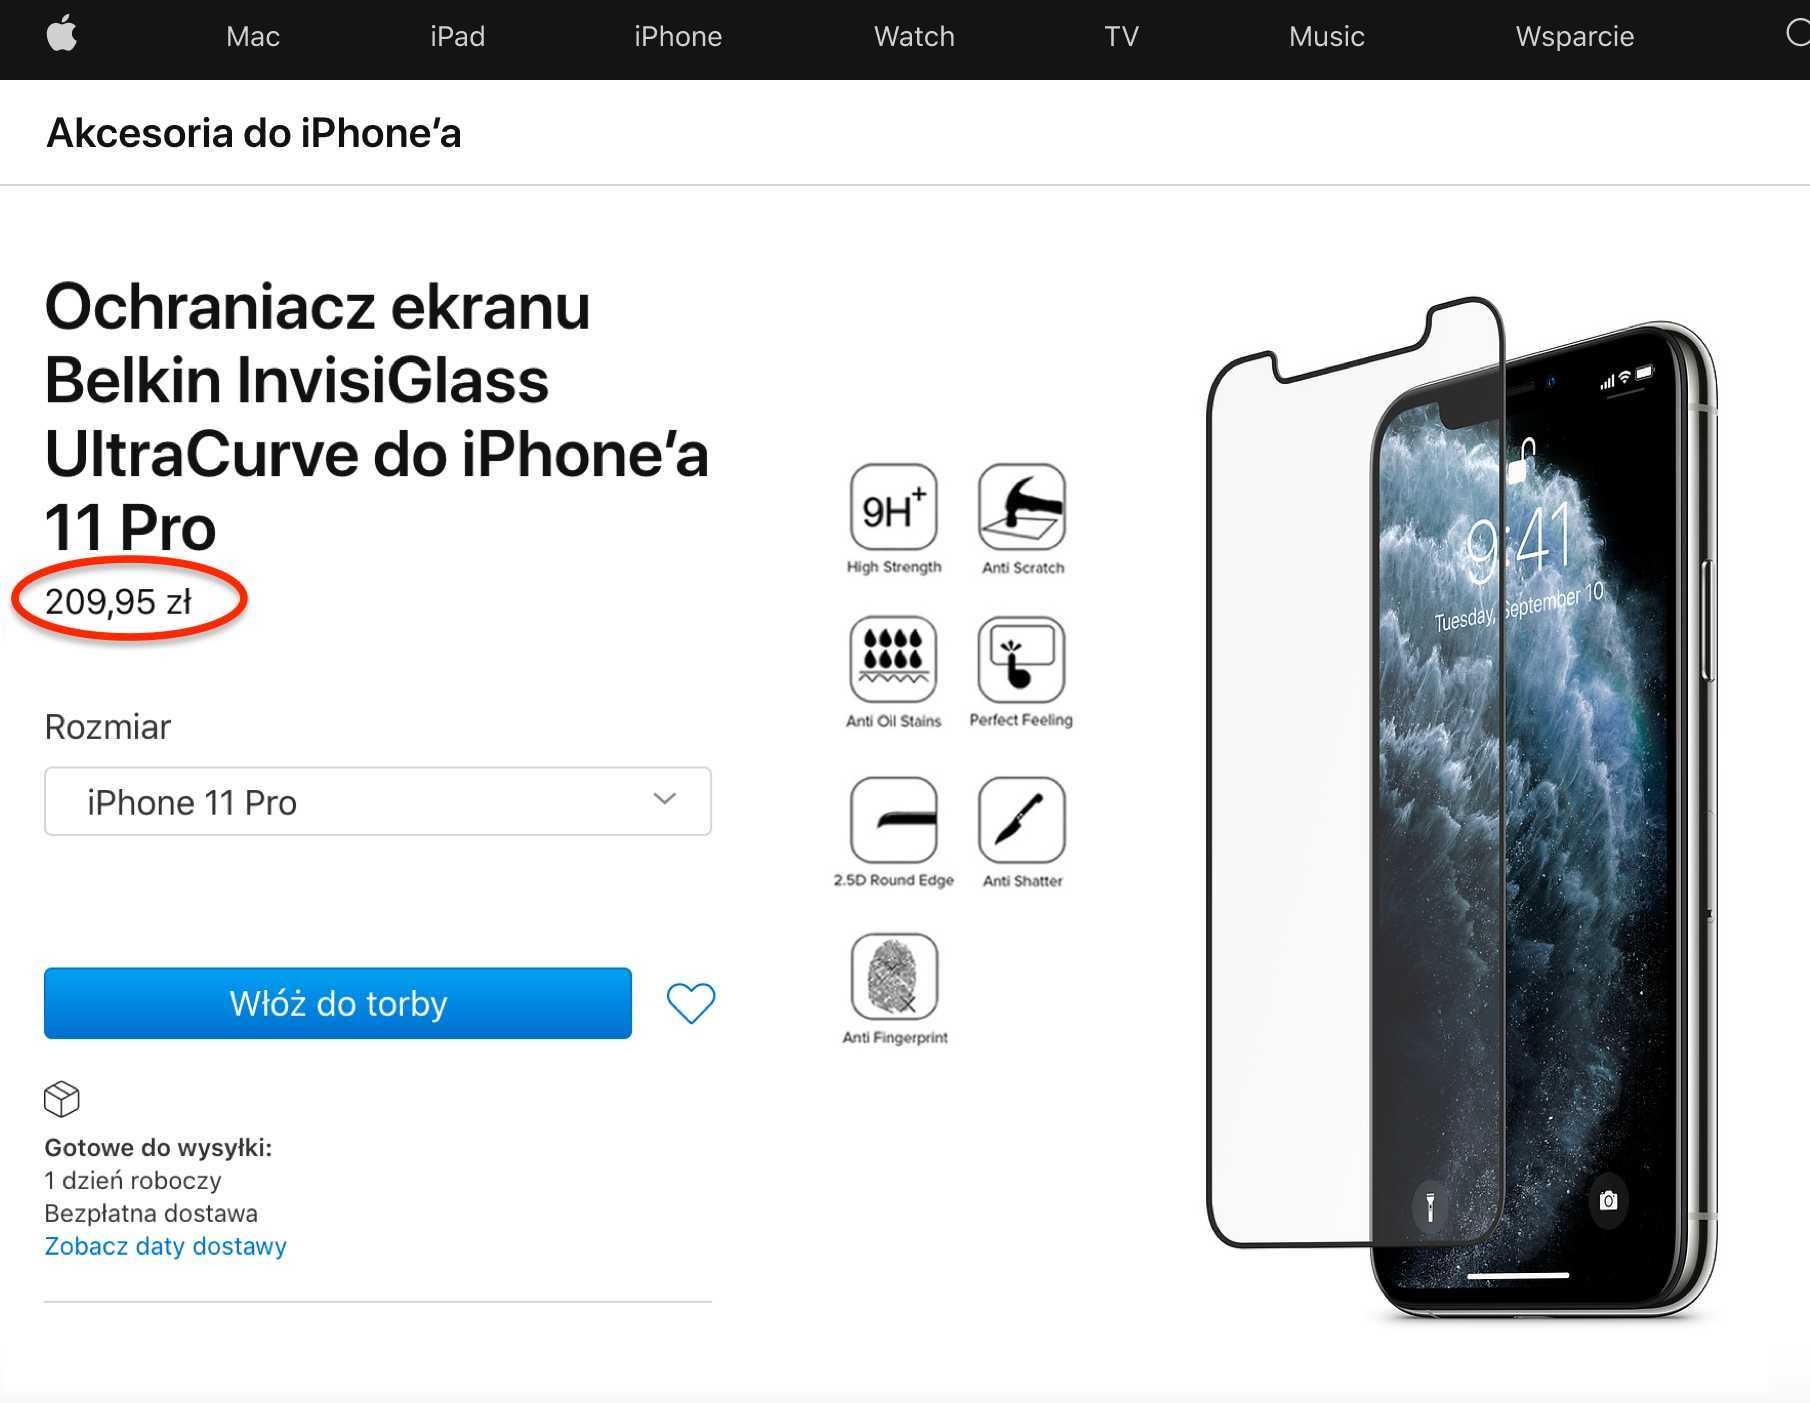 I. NOWY Apple iPhone 11 Pro 256GB Folie BATERIA 100% PL GWAR+DODATKI!